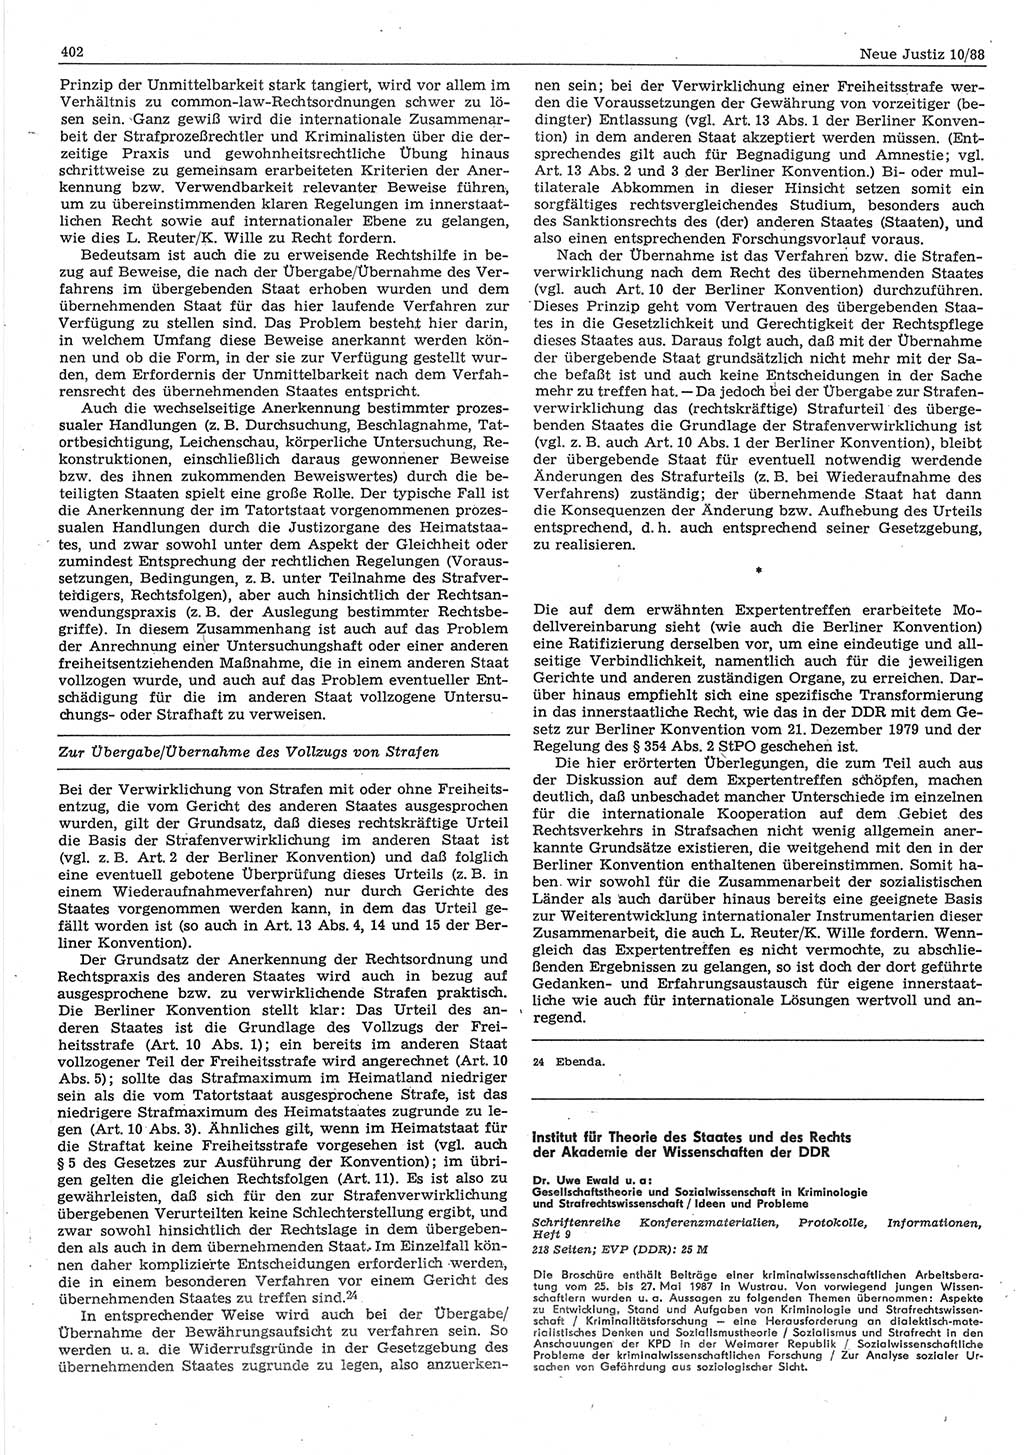 Neue Justiz (NJ), Zeitschrift für sozialistisches Recht und Gesetzlichkeit [Deutsche Demokratische Republik (DDR)], 42. Jahrgang 1988, Seite 402 (NJ DDR 1988, S. 402)